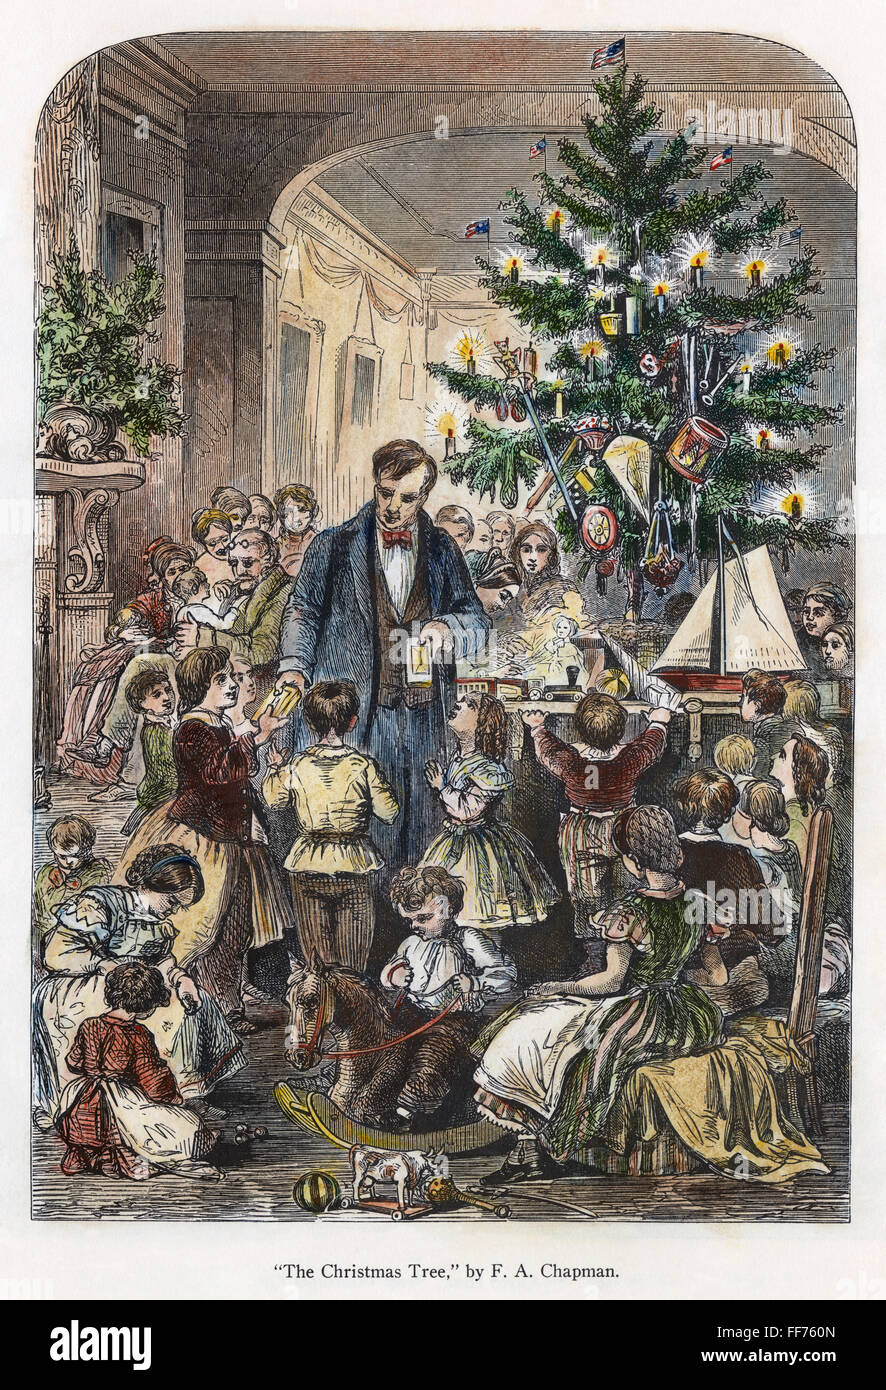 Weihnachten, c1870. /nPassing, Weihnachten präsentiert um den Baum herum. Amerikanische Gravur, c1870. Stockfoto